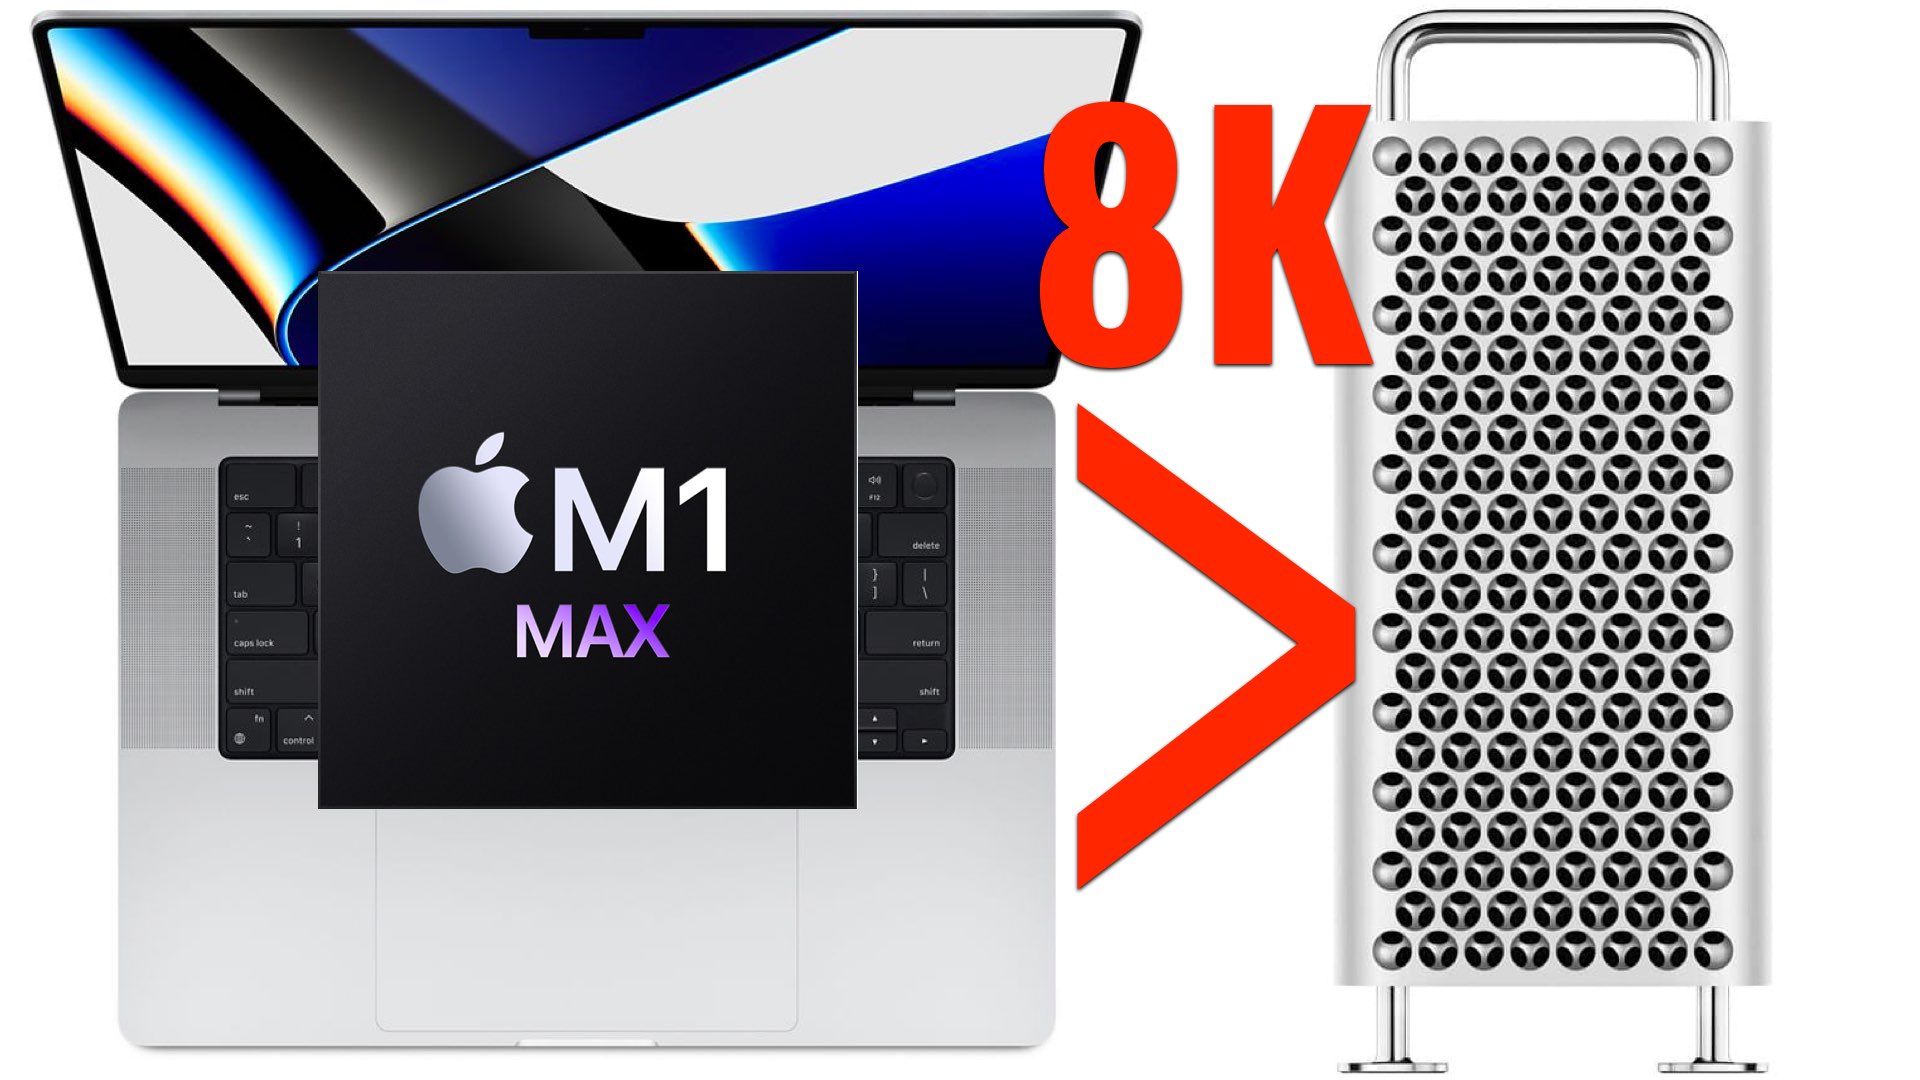 imac vs mac mini video editing